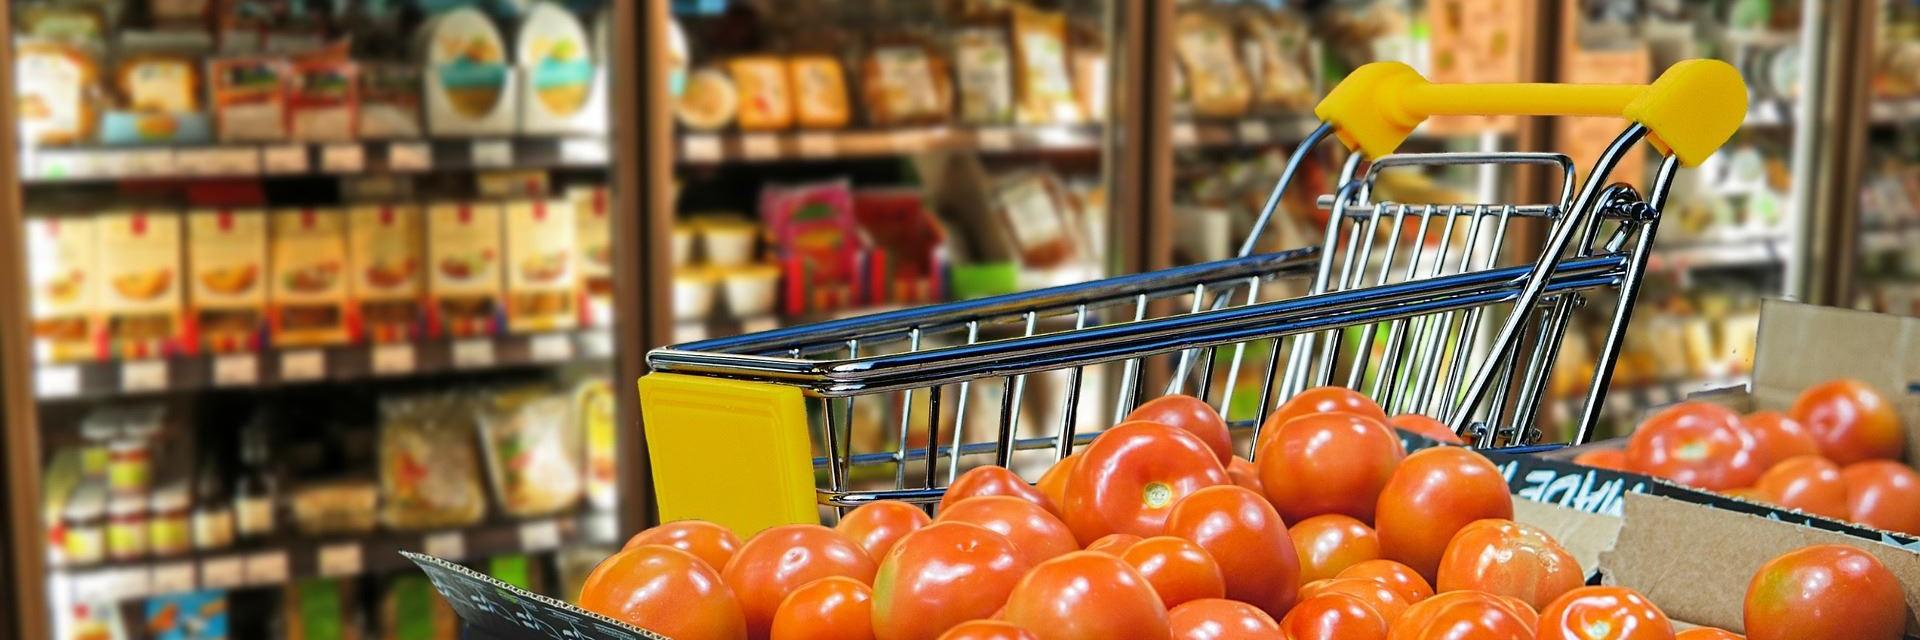 Software Afono 365 Handel für den Einsatz im Lebensmittelbereich: Supermarkt, Bioläden, Bäckerei, Fleischerei